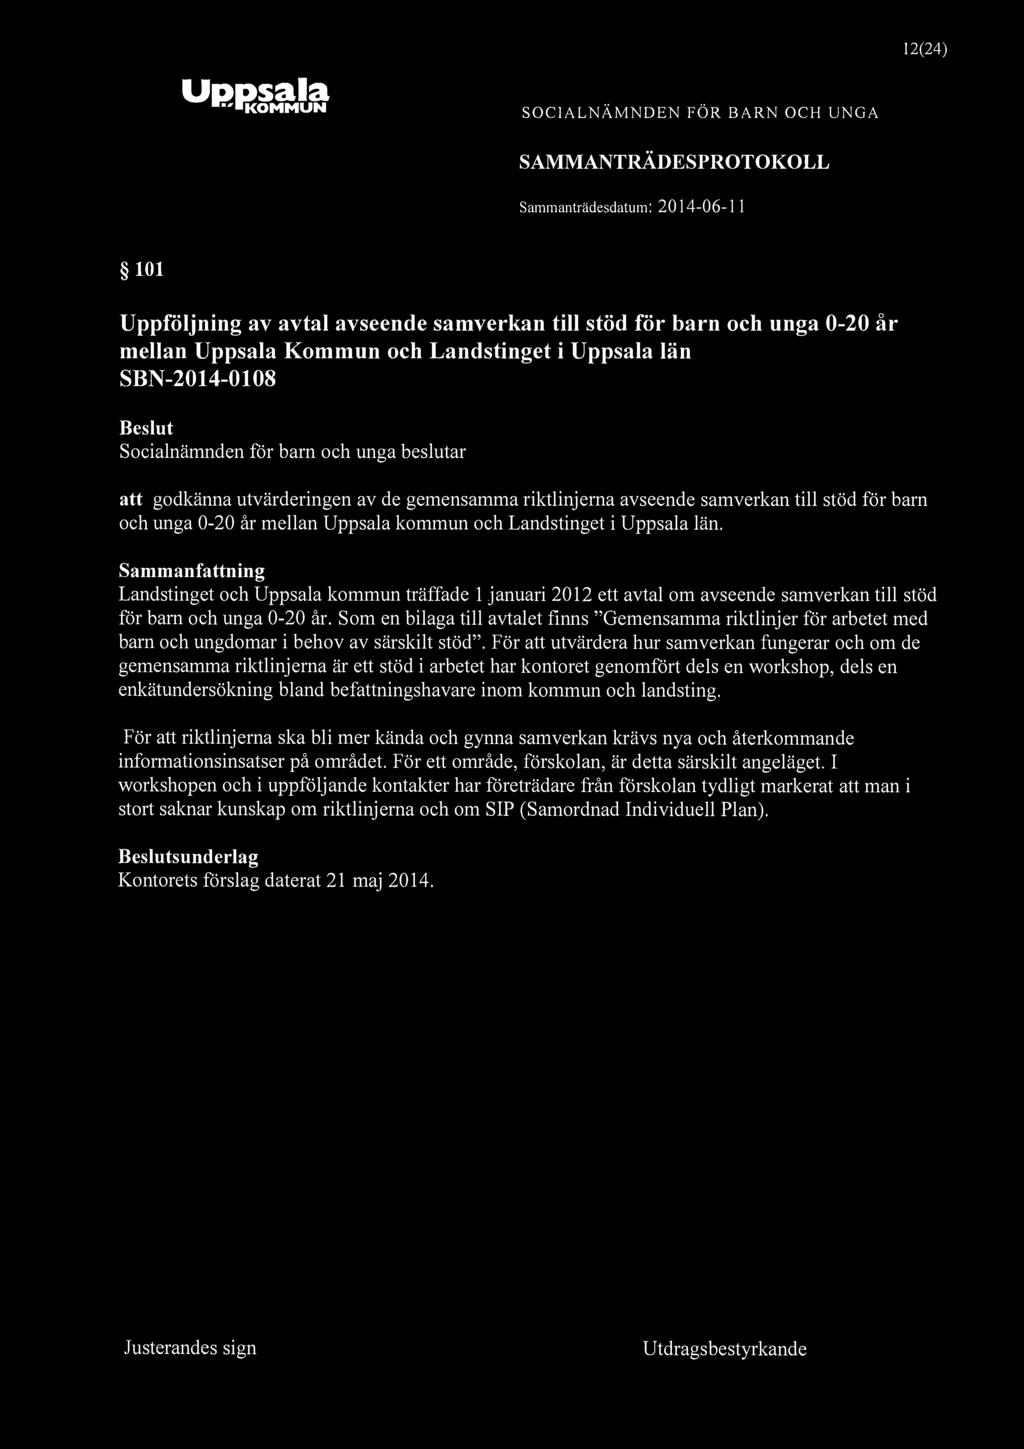 KOMMUN 12(24) 101 Uppföljning av avtal avseende samverkan till stöd för barn och unga 0-20 år mellan Uppsala Kommun och Landstinget i Uppsala län SBN-2014-0108 att godkänna utvärderingen av de